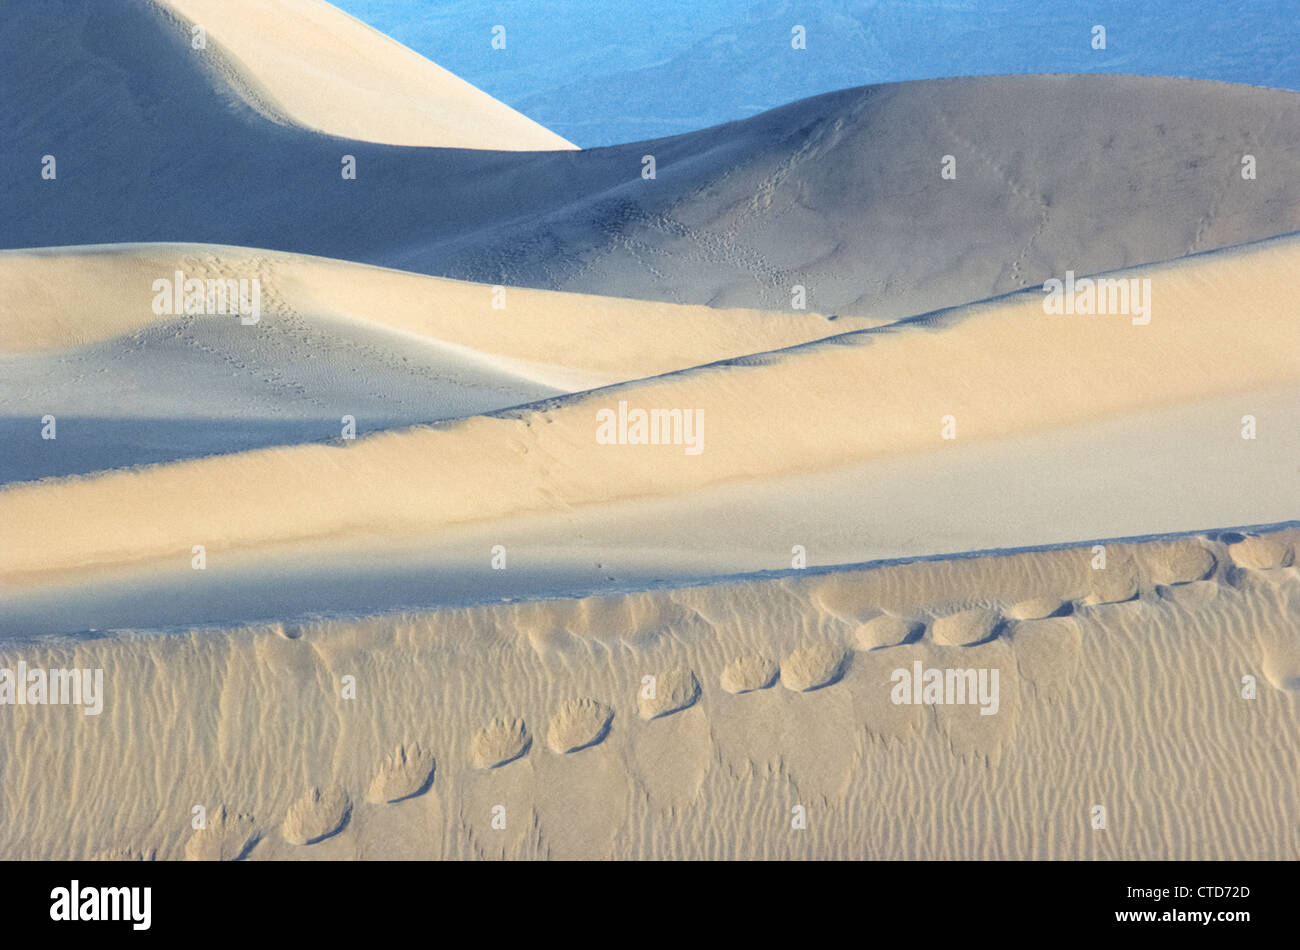 Die Winde und menschliche Fußabdrücke erstellen abstrakte Muster in diesen Sanddünen bei Stovepipe Wells in Death Valley Nationalpark, Kalifornien, USA. Stockfoto